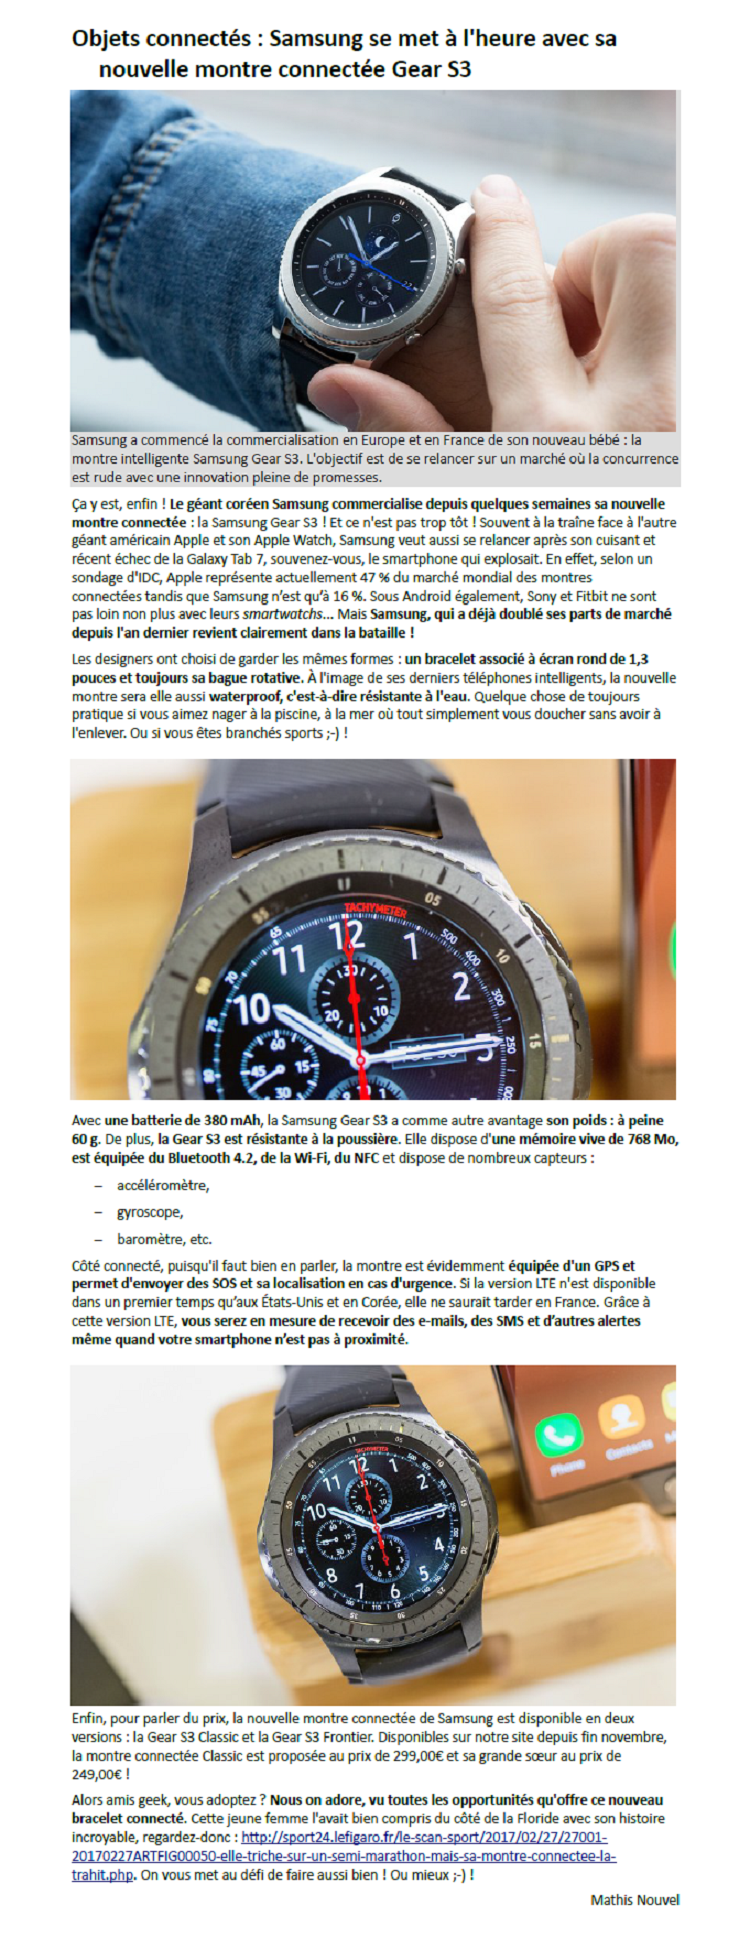 Réalisation : Objets connectés : Samsung se met à l'heure avec sa nouvelle montre connectée Gear S3